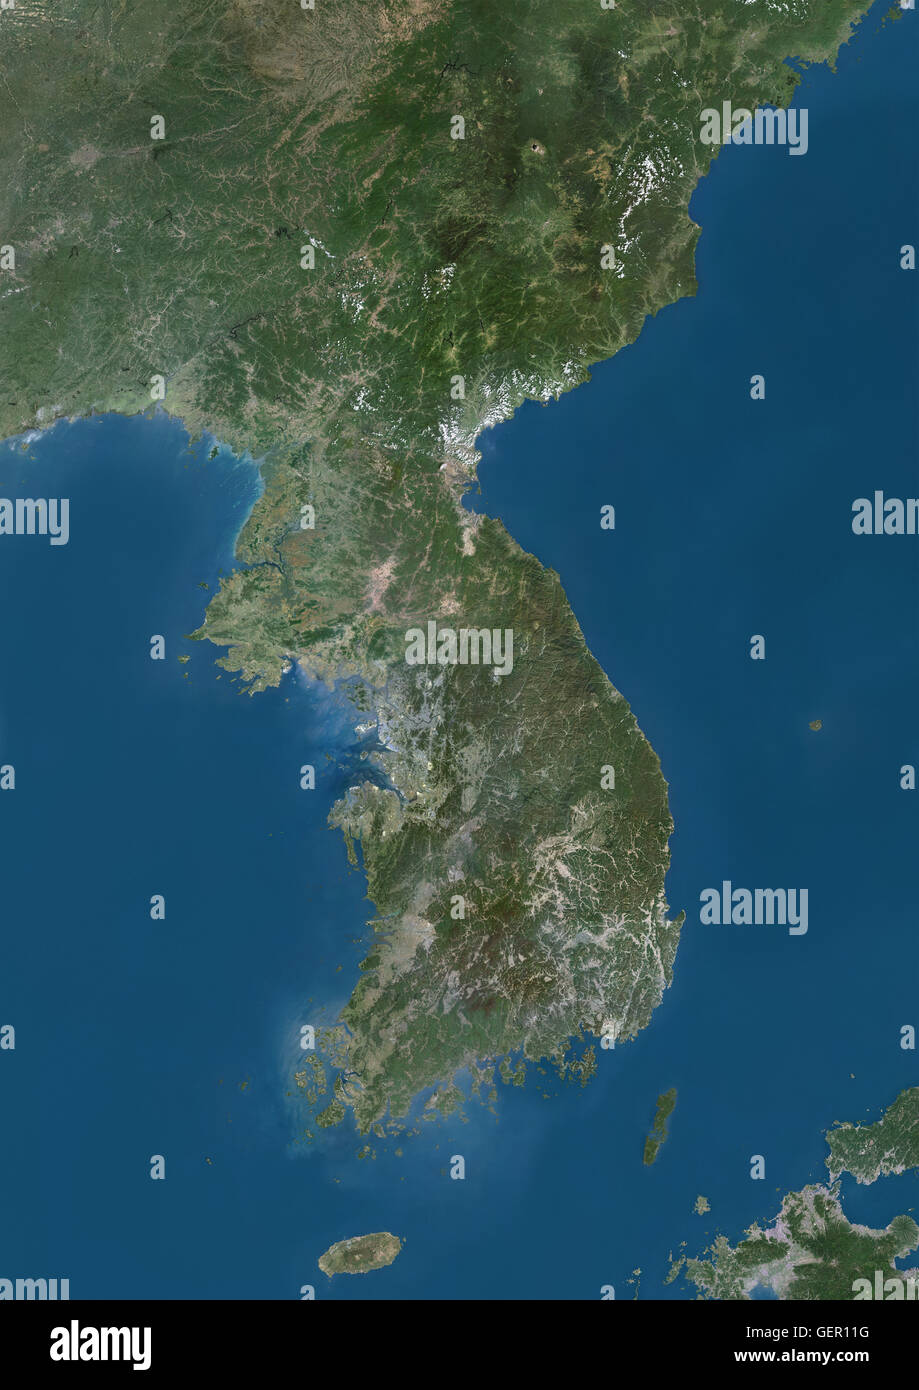 Vista satélite de la Península de Corea. Esta imagen fue compilado a partir de datos adquiridos por los satélites Landsat. Foto de stock